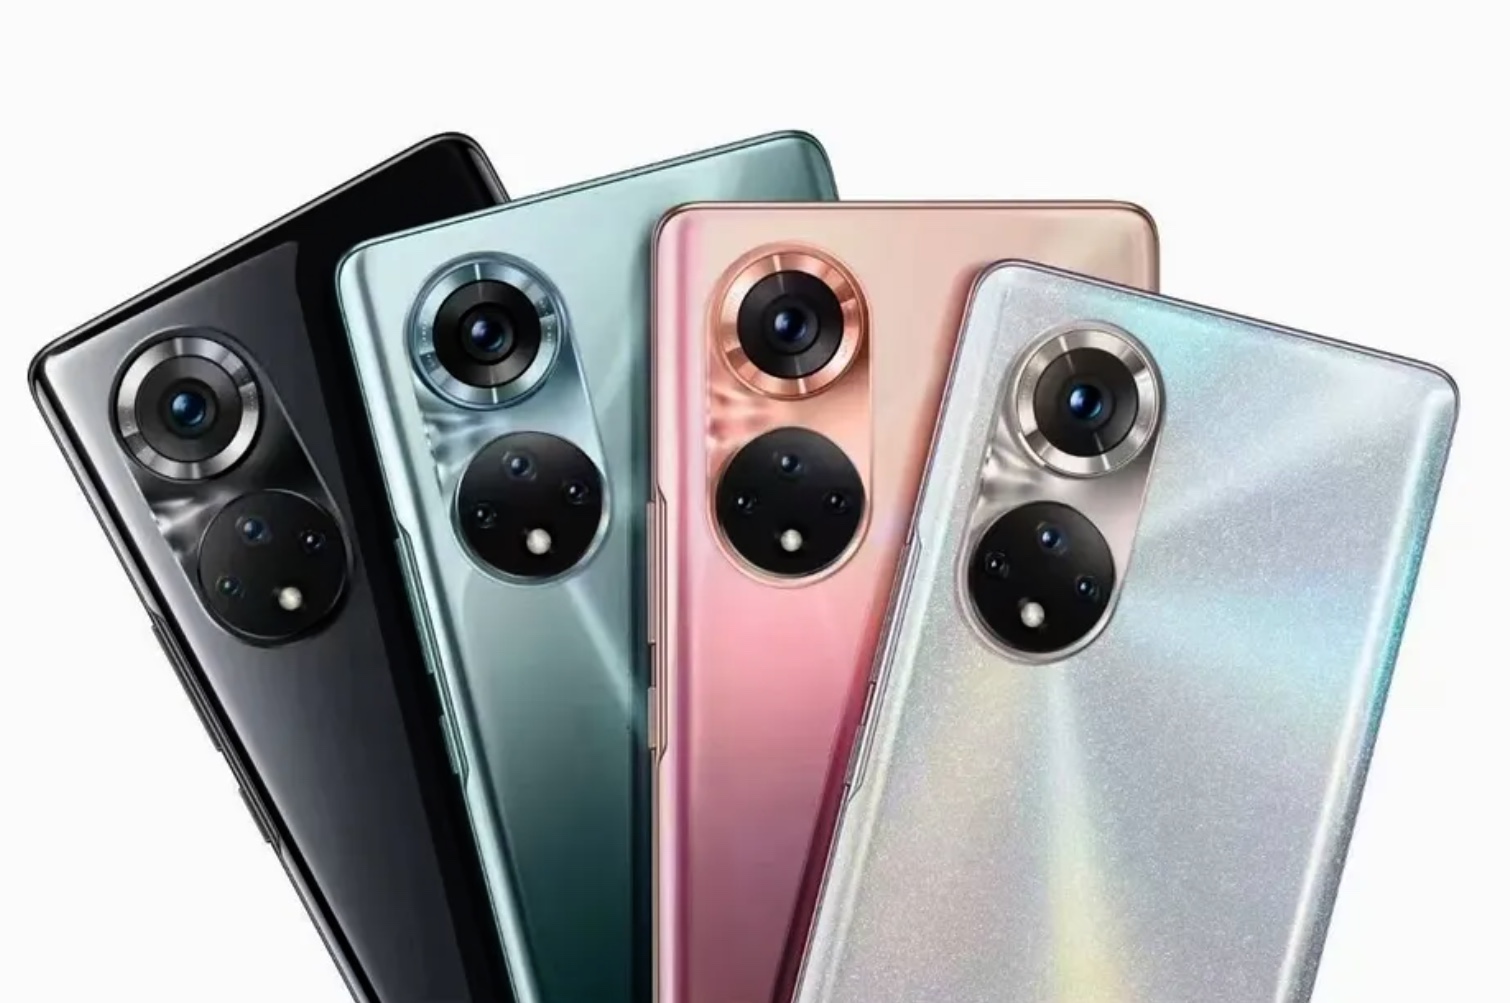 Les Honor 50, 50 Pro et 50 SE sont officiels : les premiers smartphones de la marque depuis qu'elle n'appartient plus à Huawei